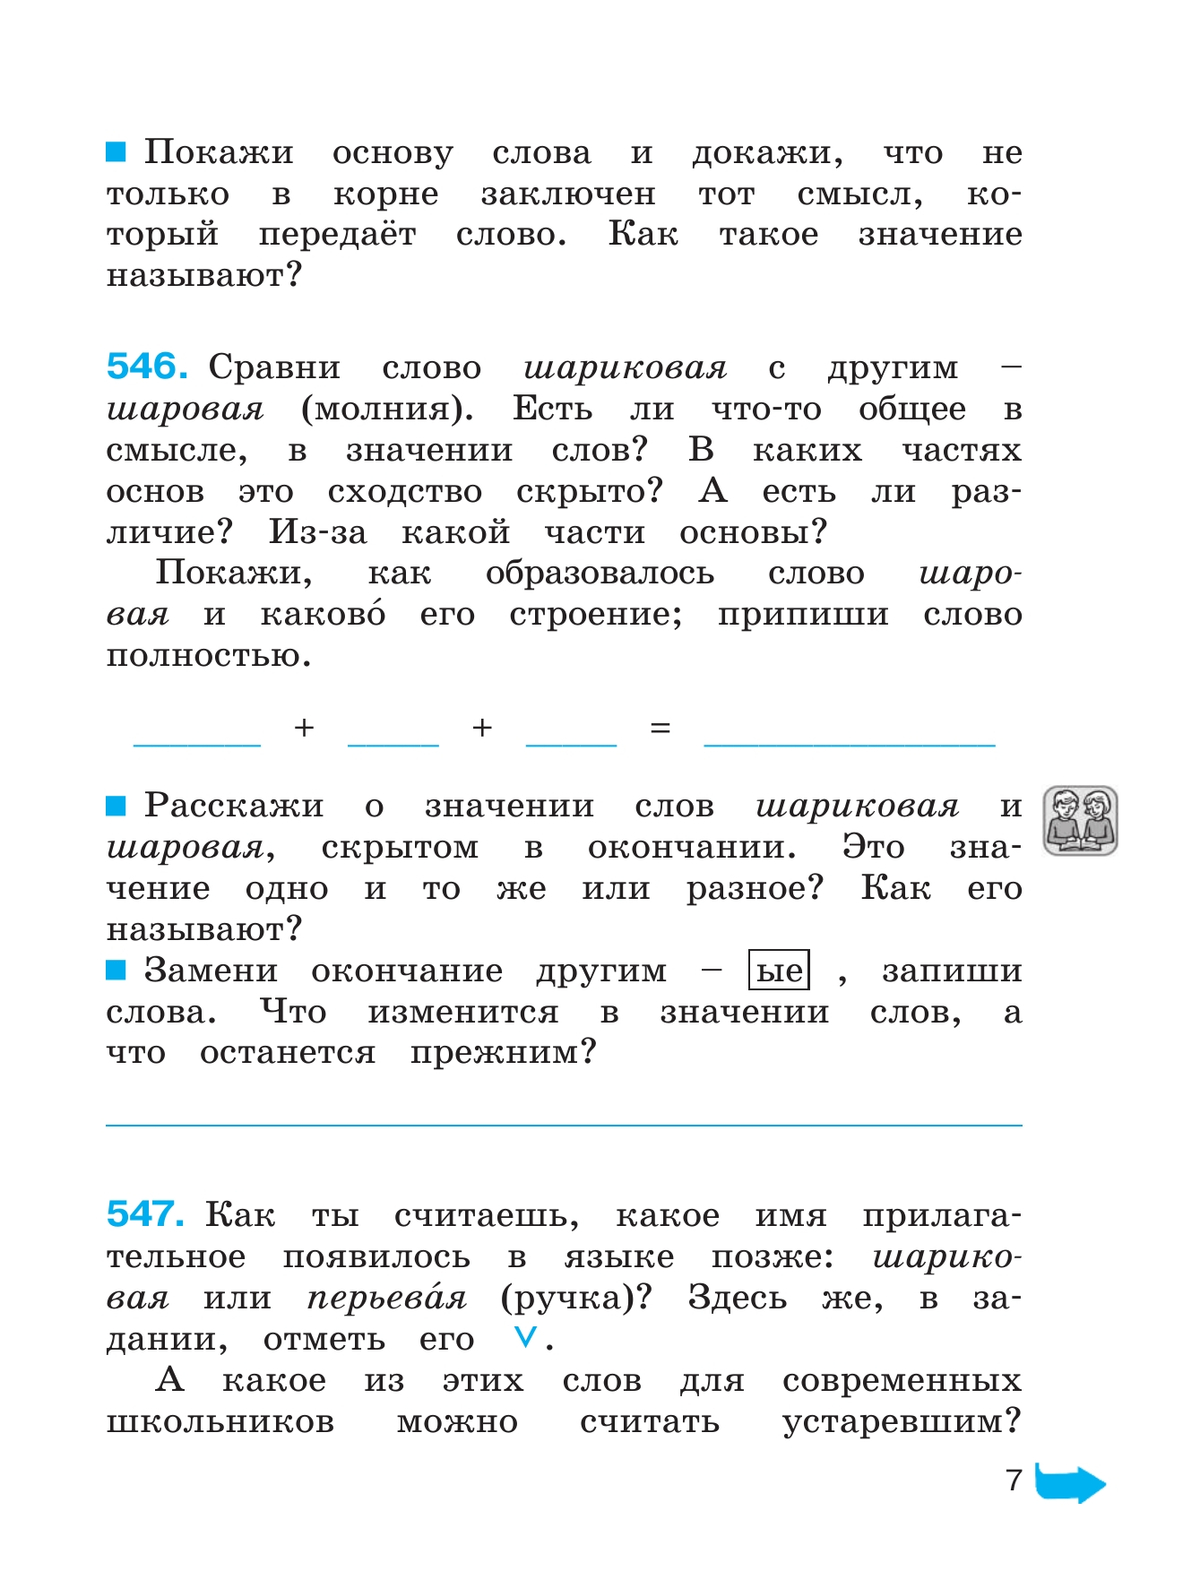 Русский язык. Тетрадь-задачник. 4 класс. В 3 частях. Часть 3 7